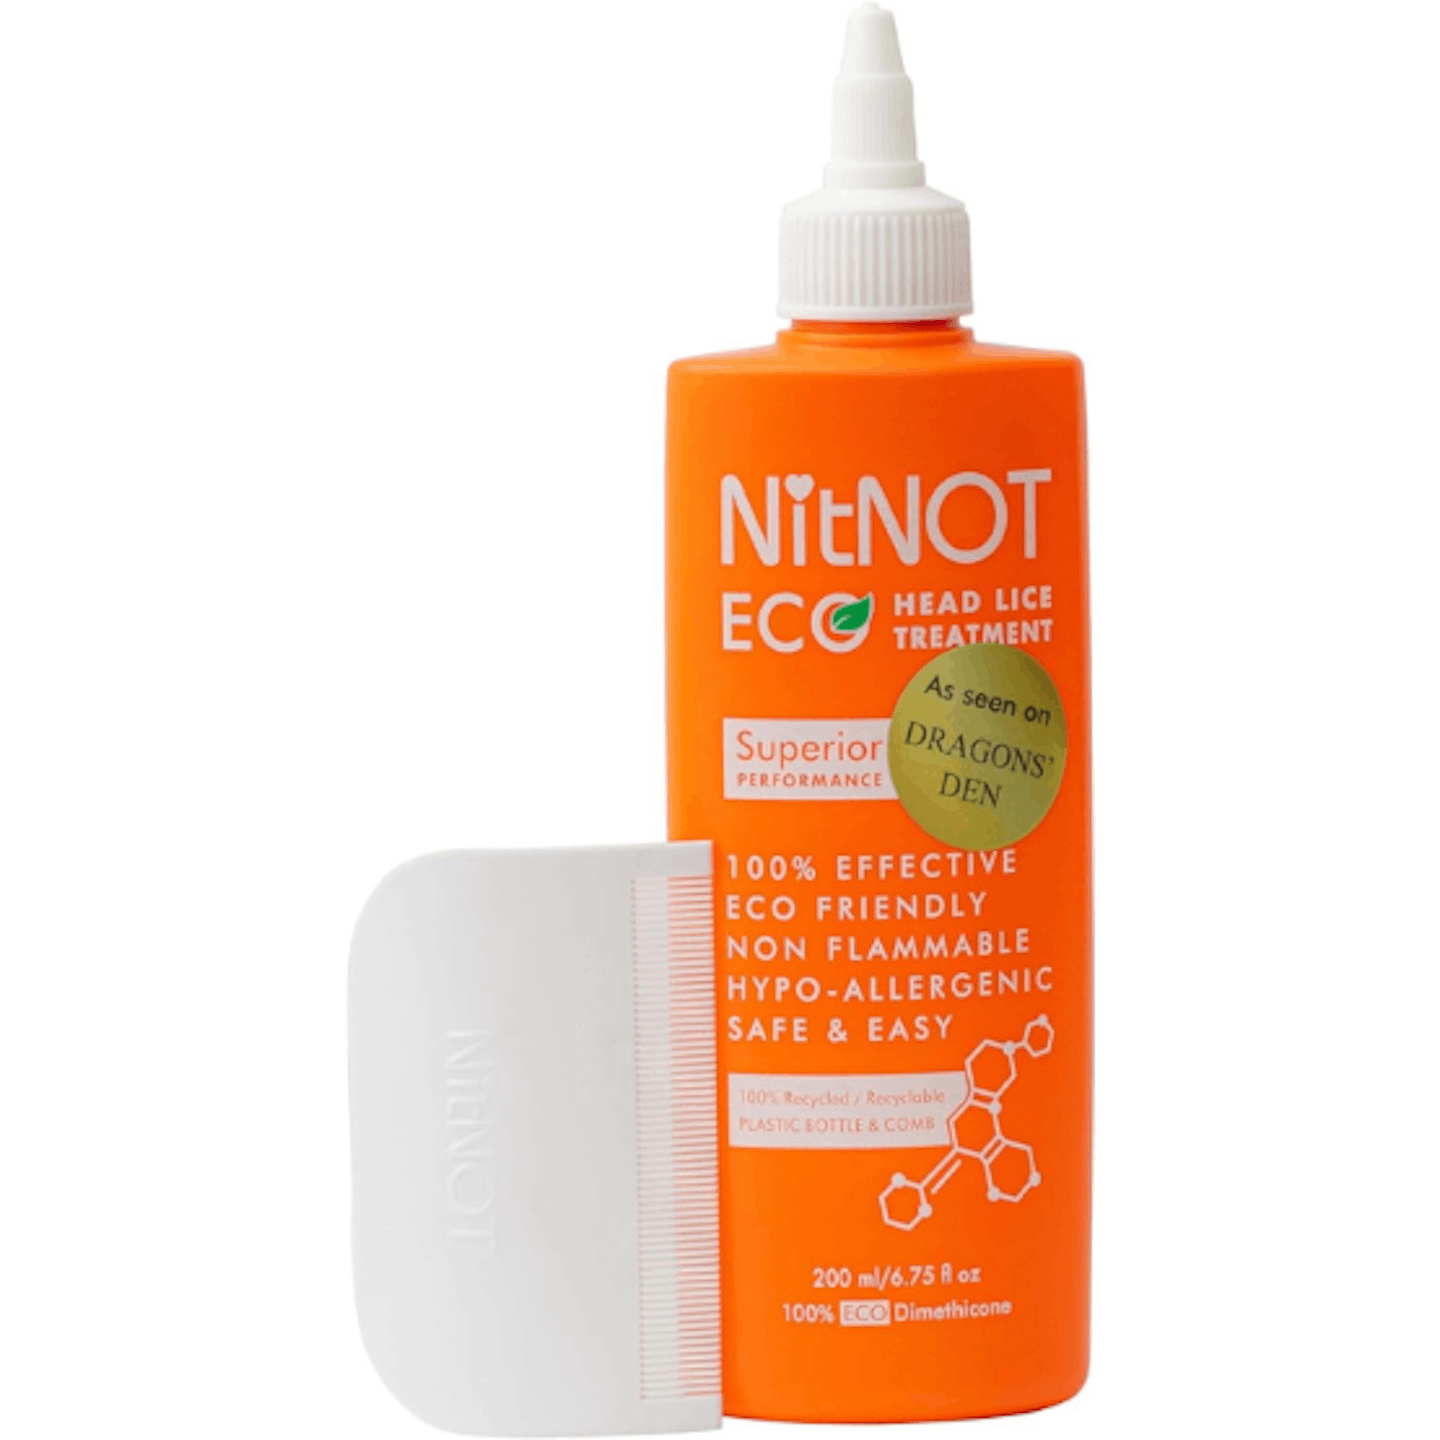 NitNot serum